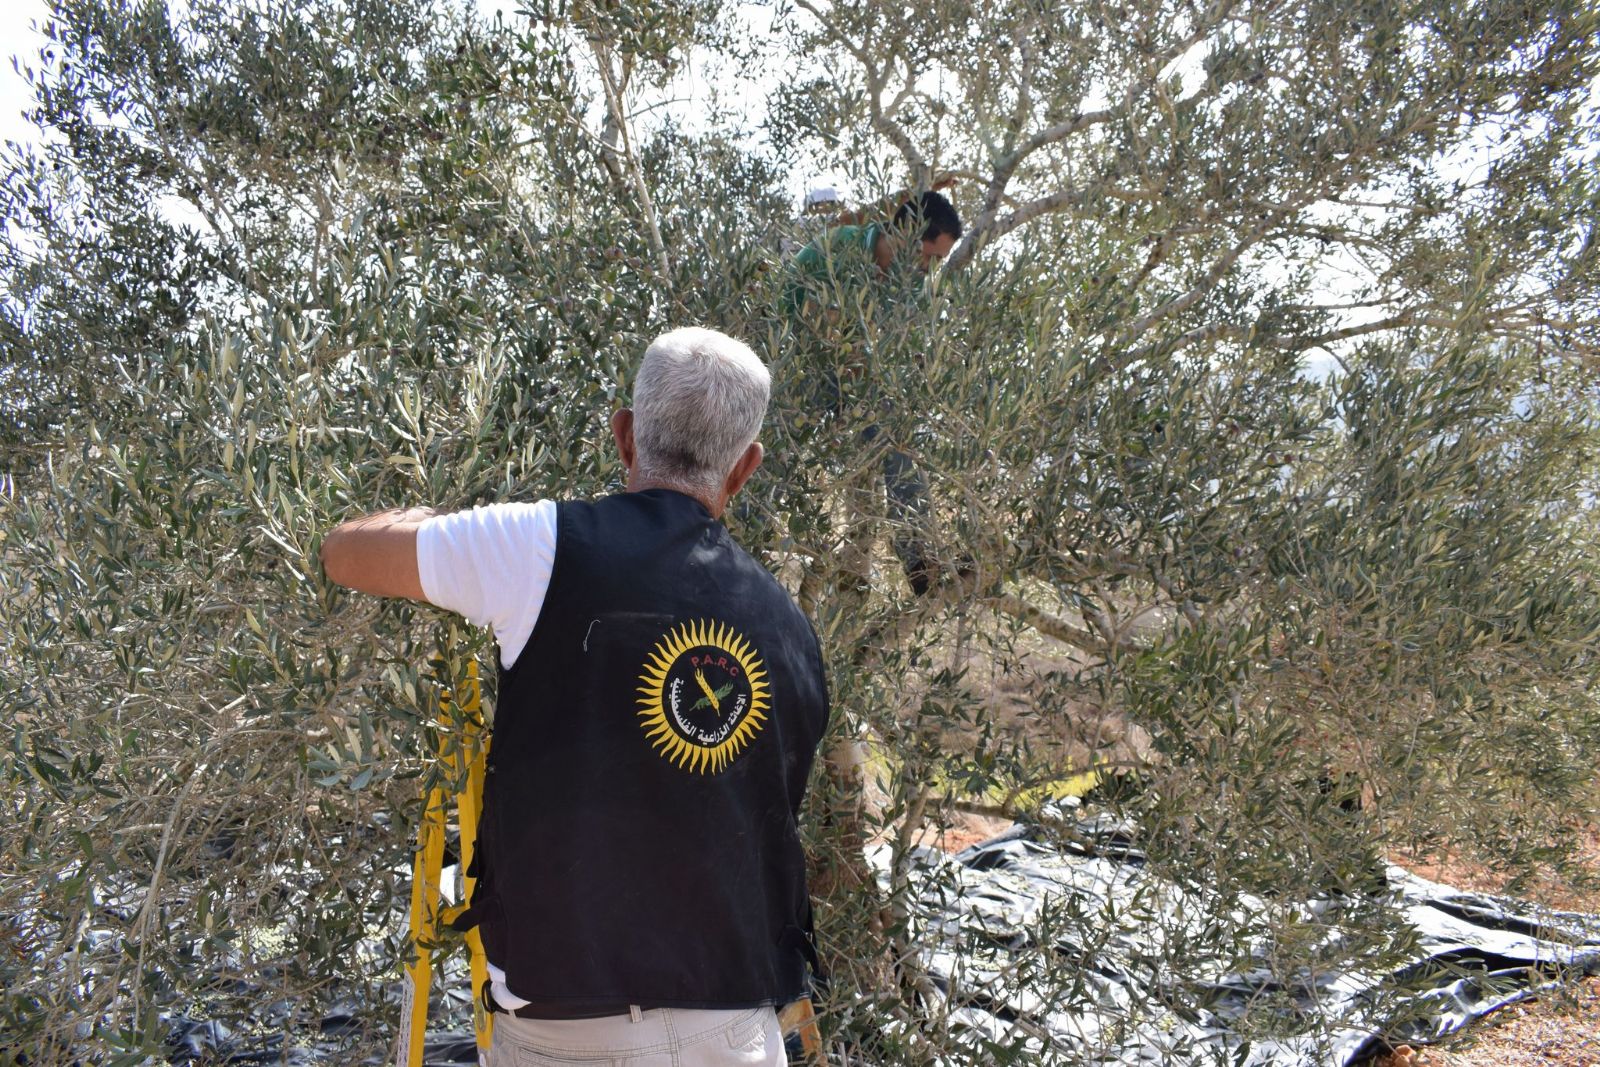 تحت شعار " احنا معكم "  الإغاثة الزراعية تطلق حملتها التطوعية لقطف ثمار الزيتون في الضفة الغربية وقطاع غزة